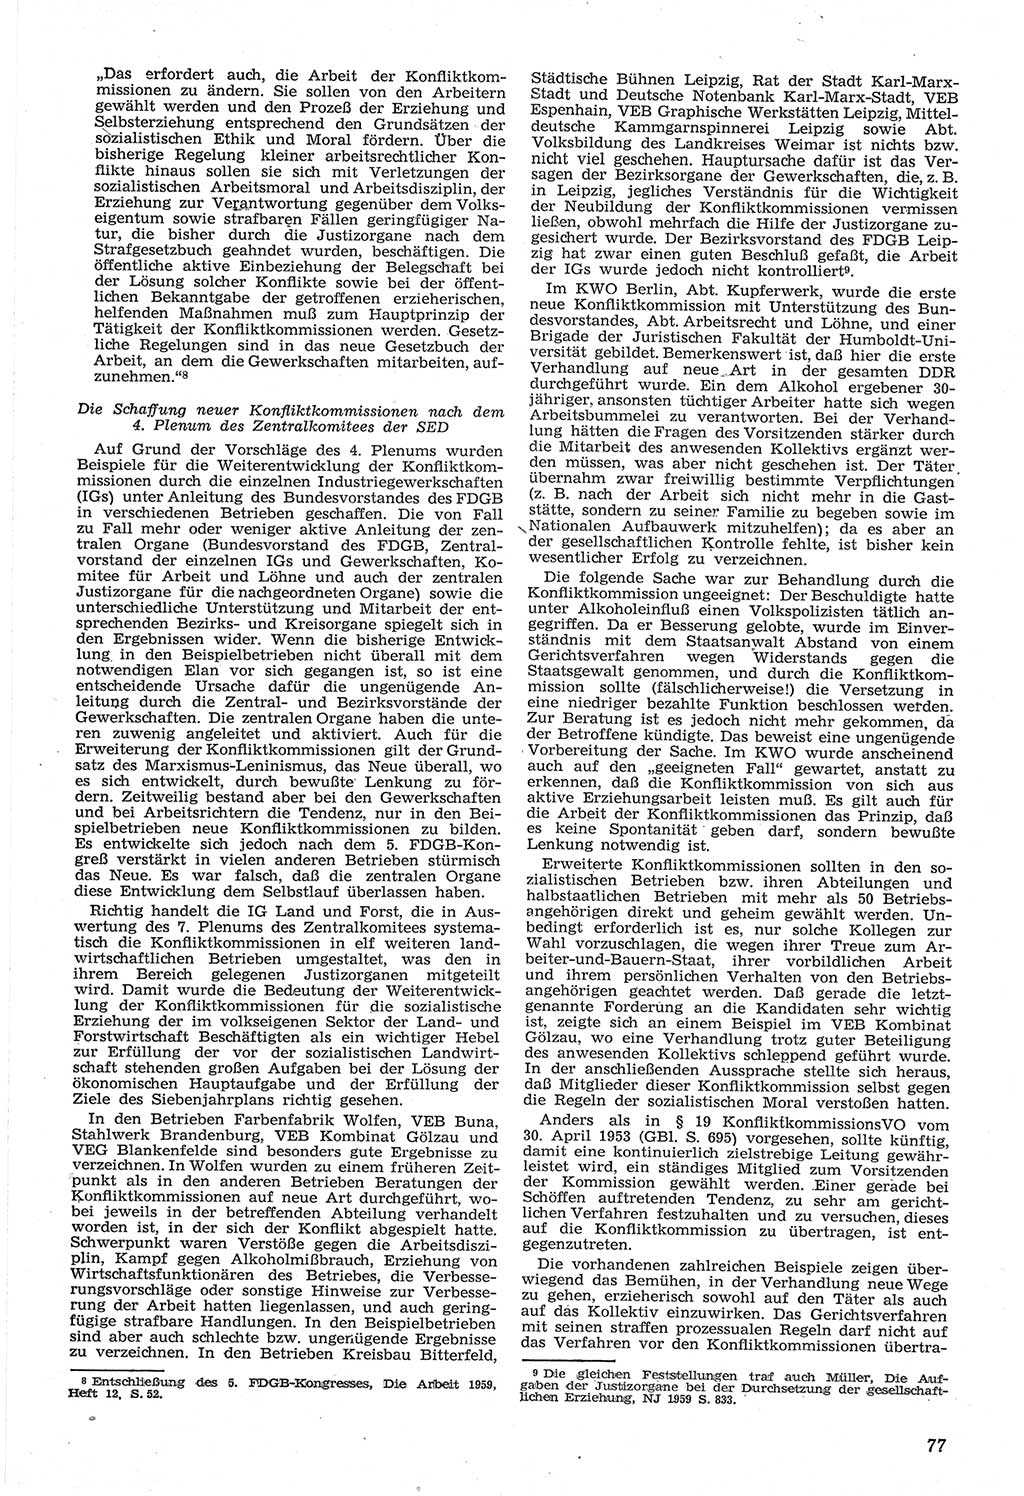 Neue Justiz (NJ), Zeitschrift für Recht und Rechtswissenschaft [Deutsche Demokratische Republik (DDR)], 14. Jahrgang 1960, Seite 77 (NJ DDR 1960, S. 77)